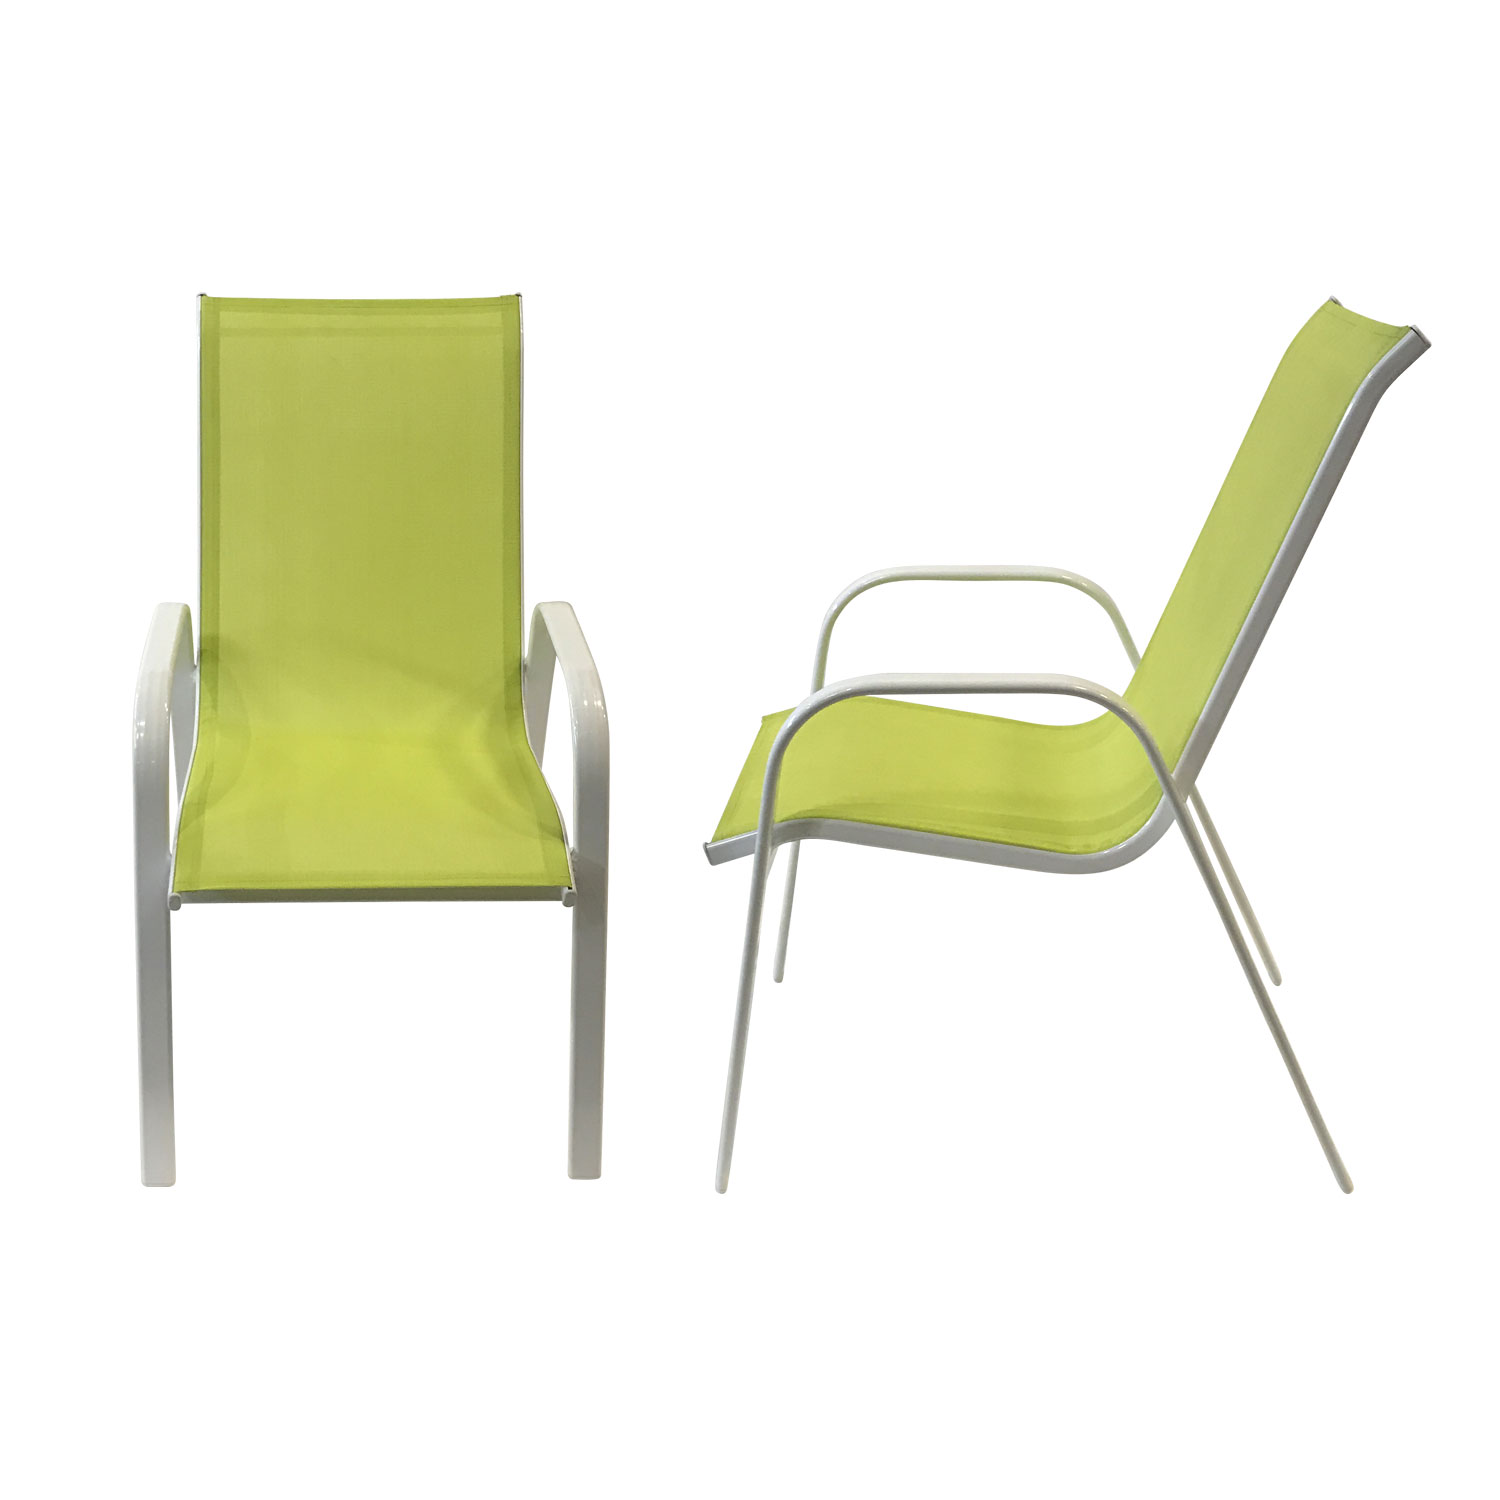 Satz von 4 Stühlen MARBELLA aus grünem Textilene - weißem Aluminium